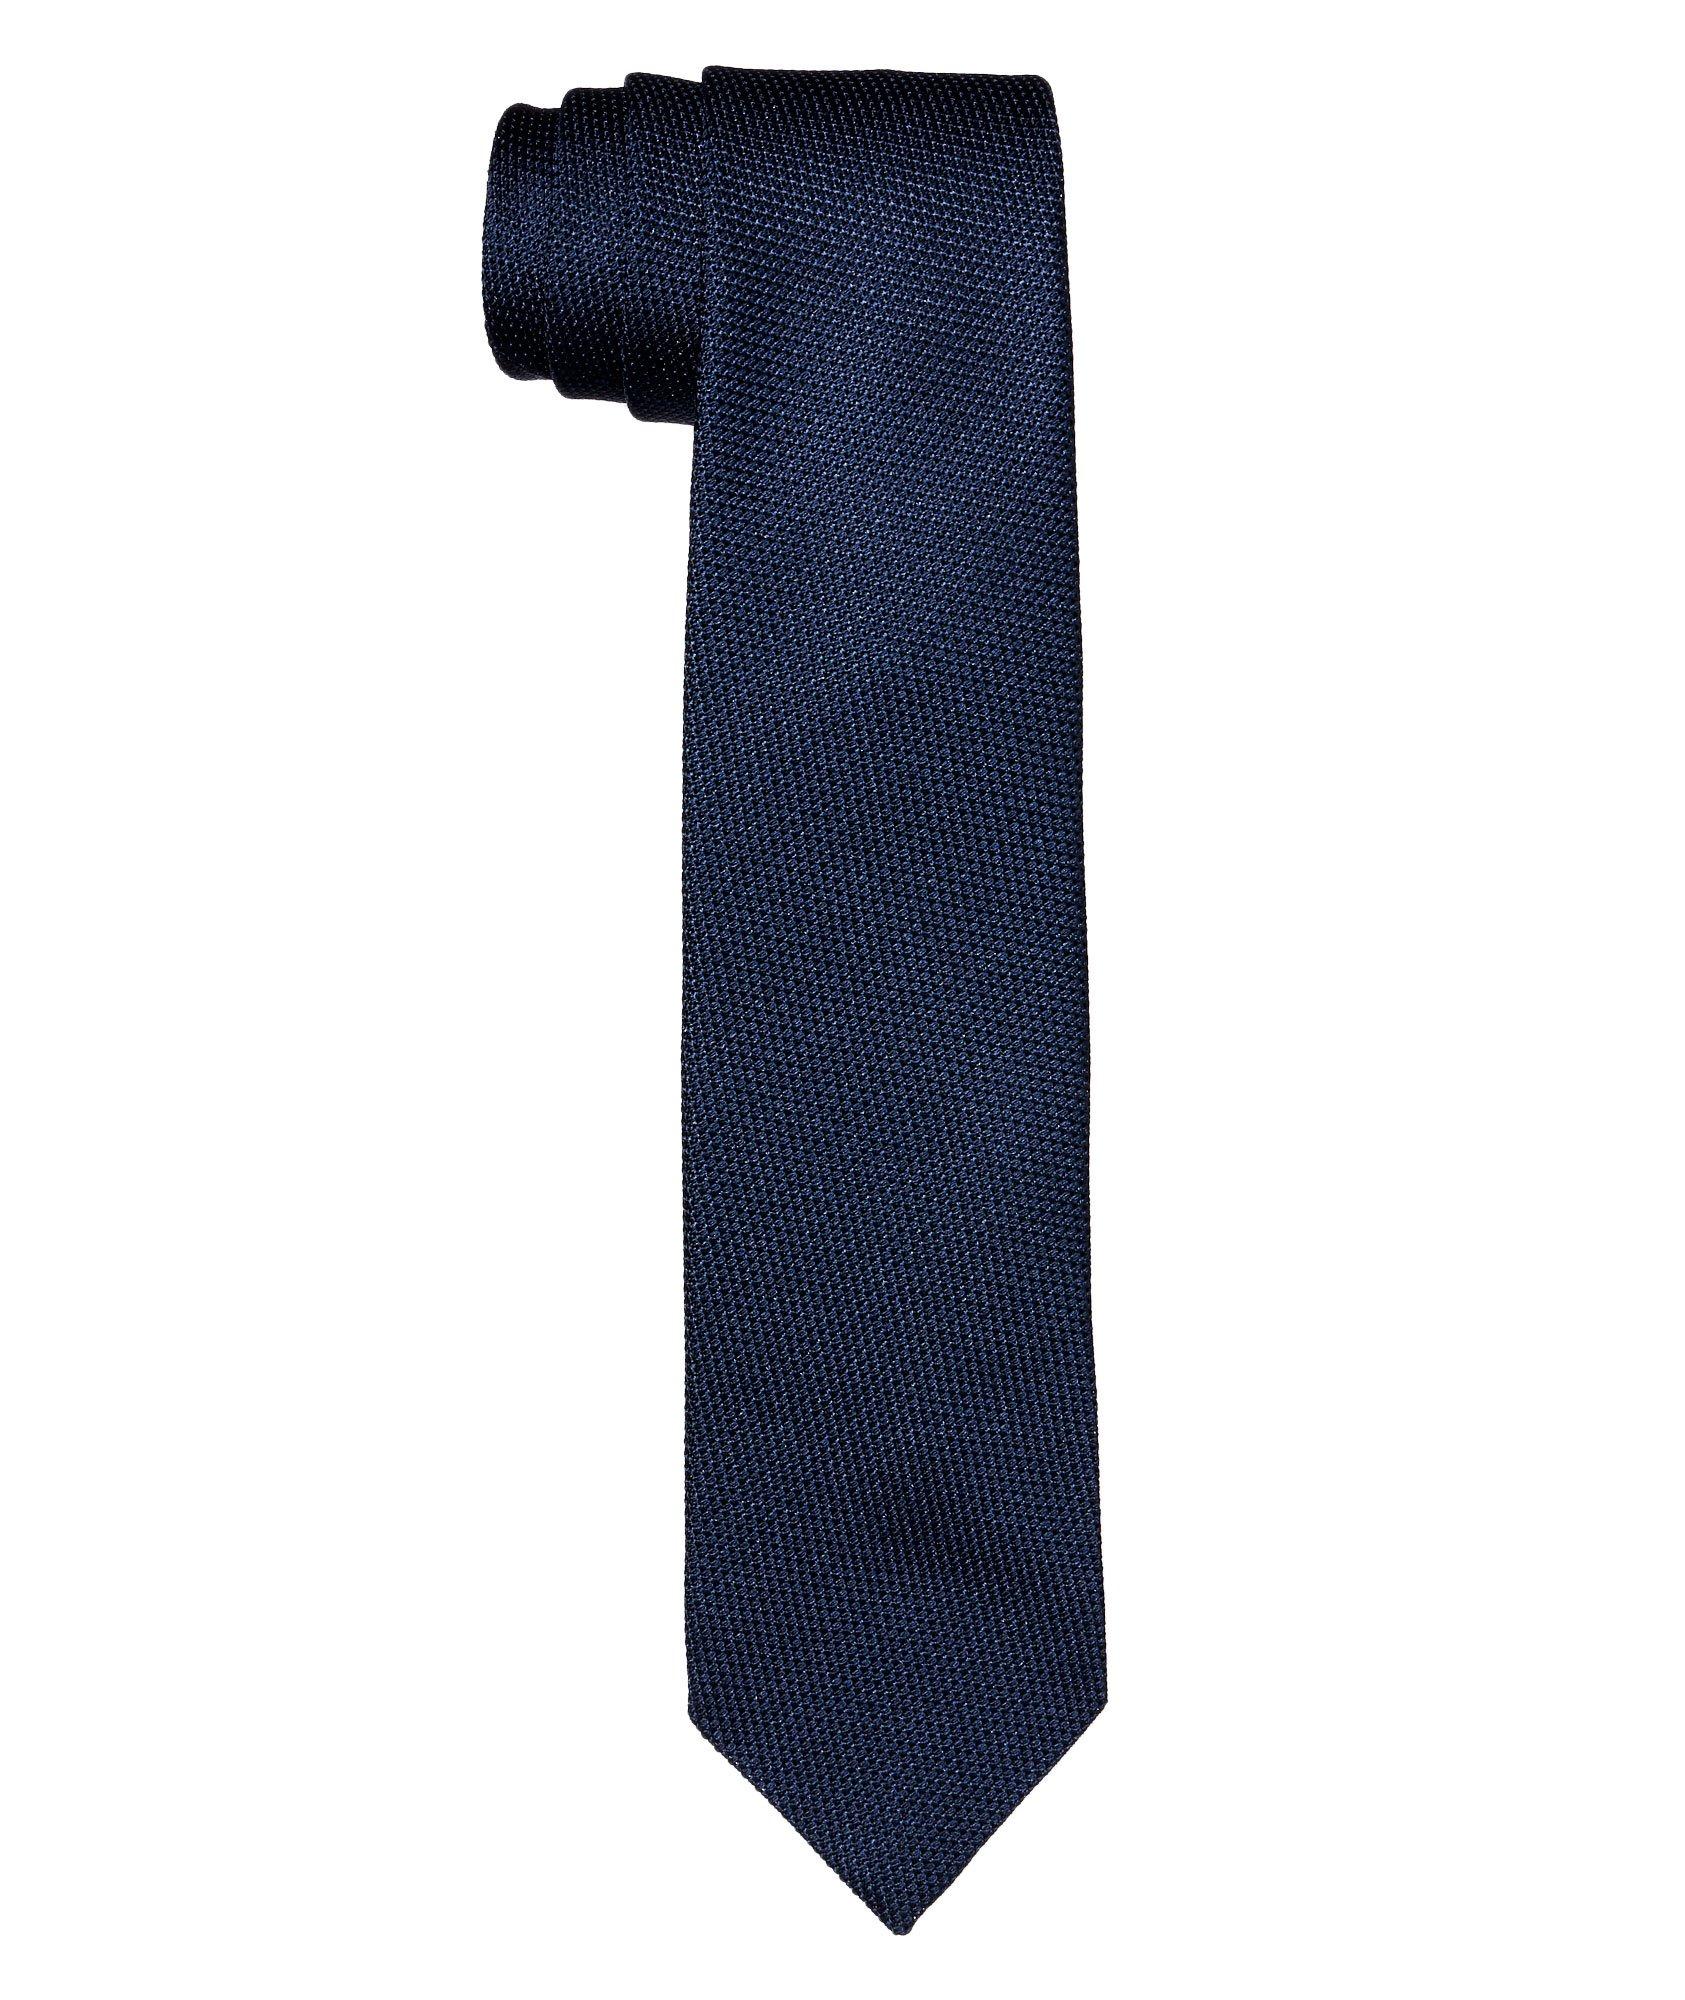 Cravate texturée en soie image 0